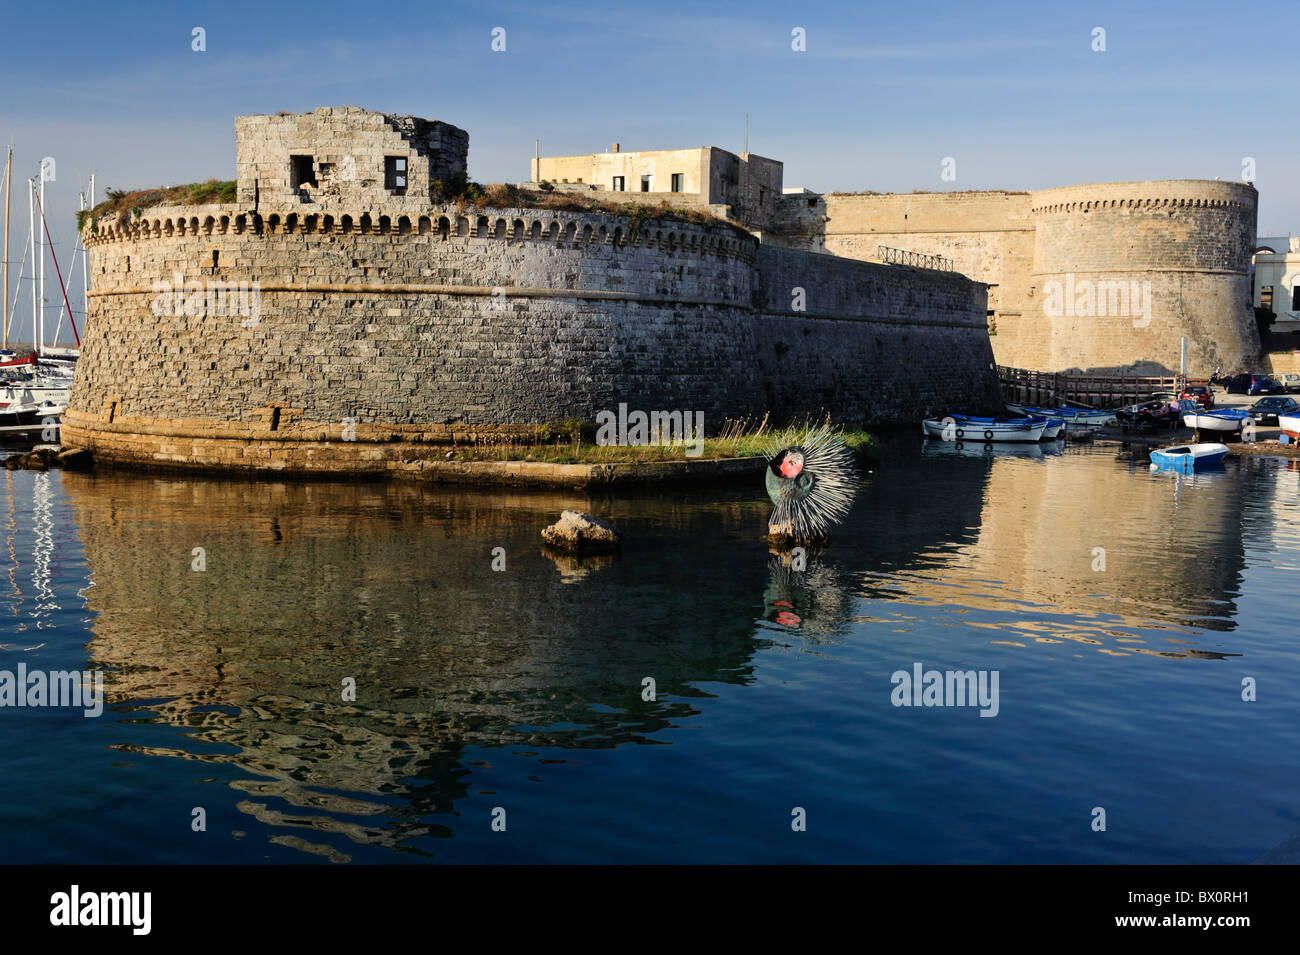 La antigua fortaleza en la zona ribereña de la ciudad de Gallipoli, Puglia, Italia Foto de stock